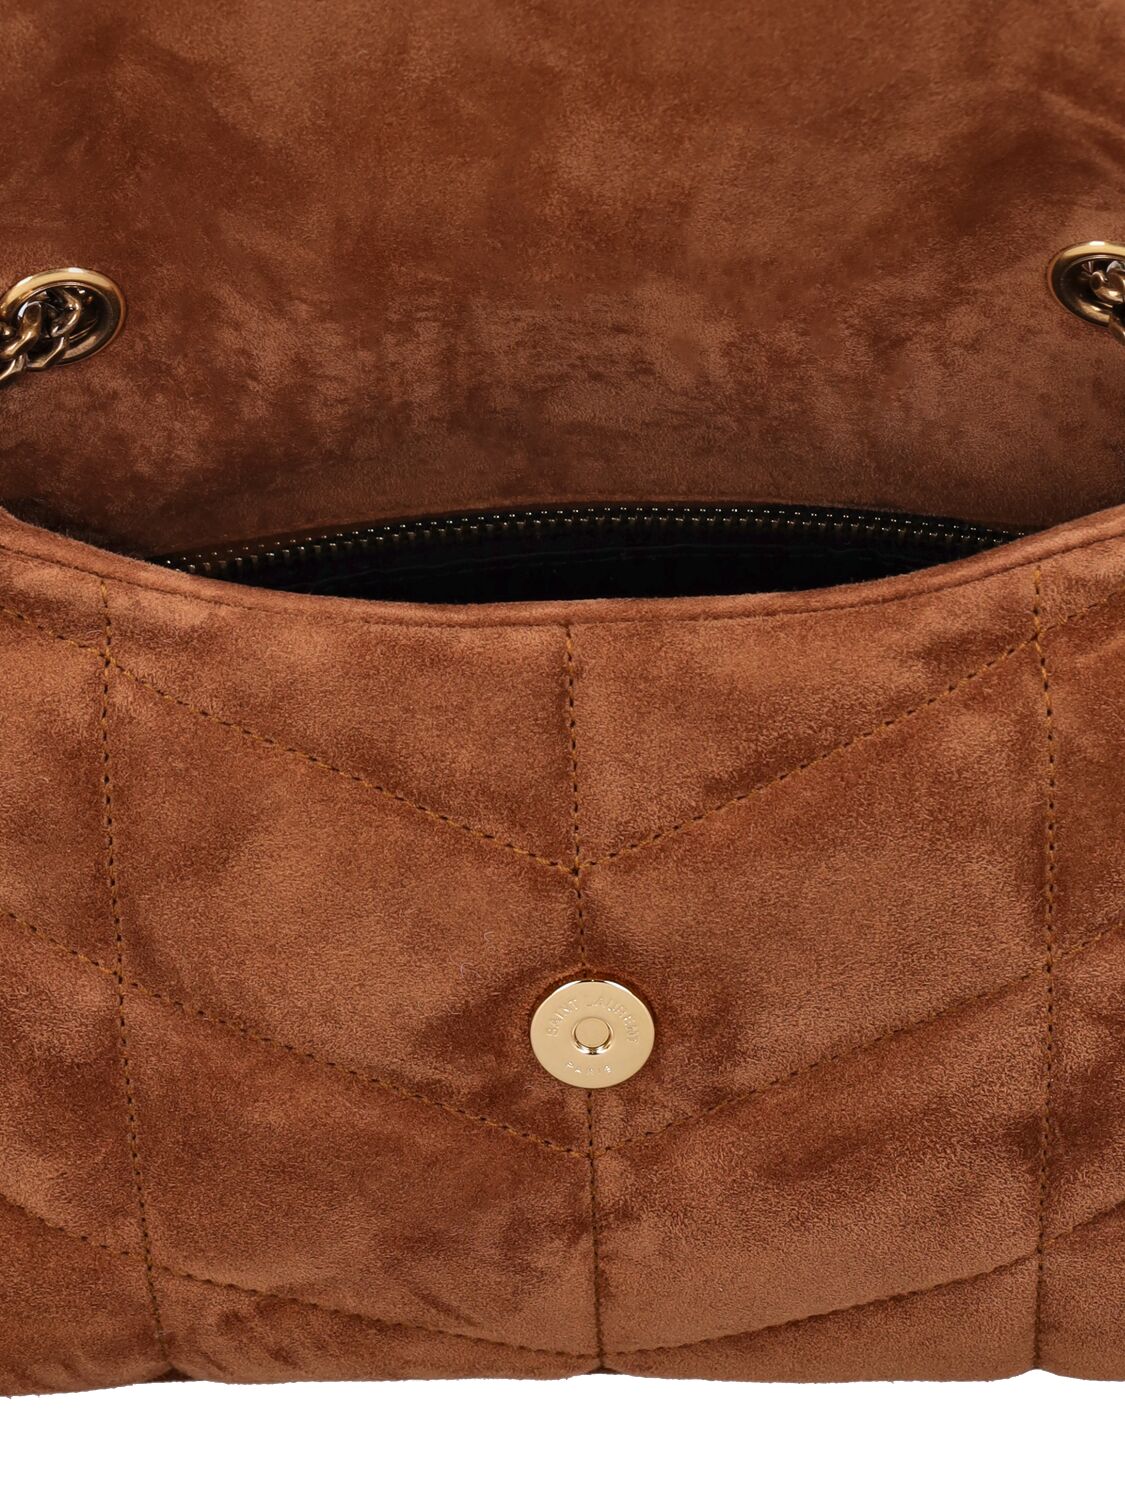 Shop Saint Laurent Toy Puffer Leather Shoulder Bag In Camel